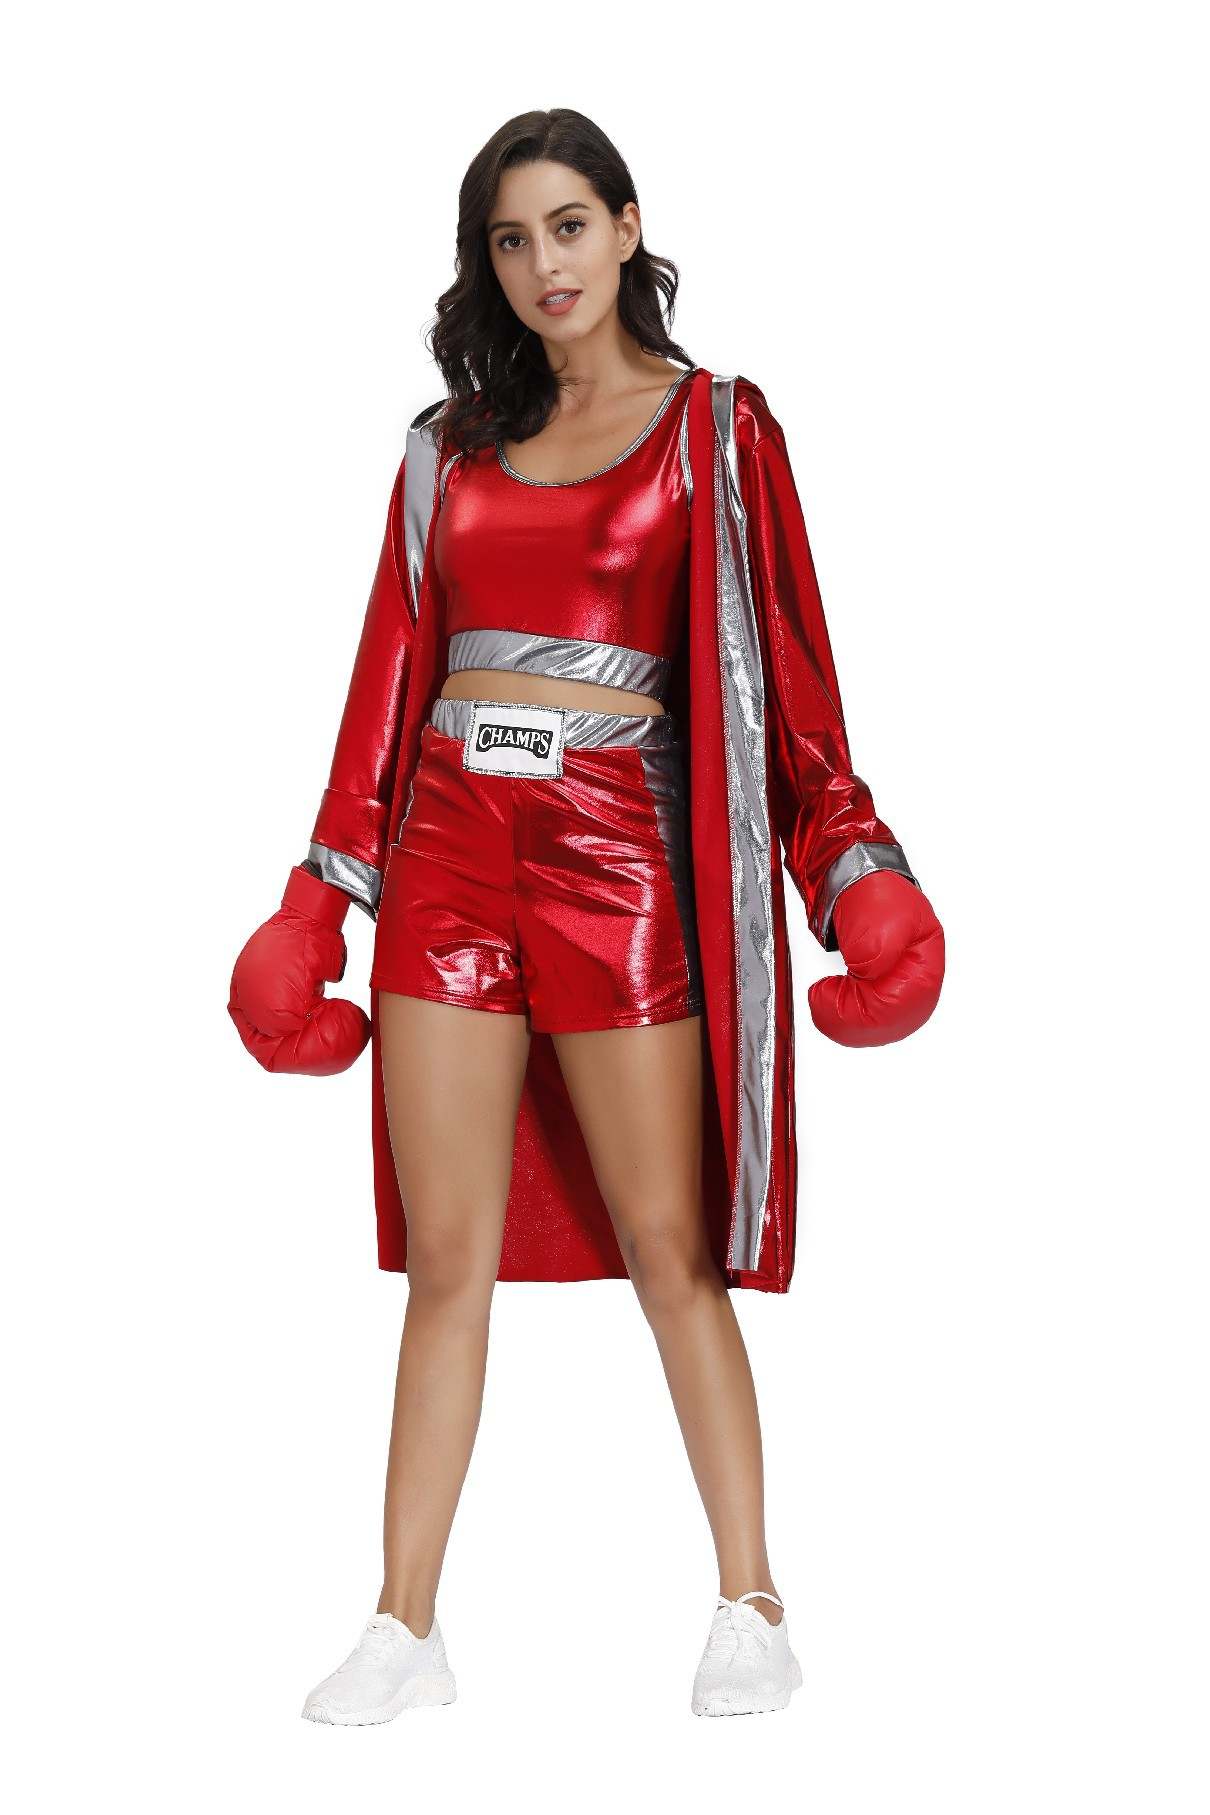 Coppia Boxe Rossa Boxer Costume Cosplay Per Donne Adulte Uomini Fantasia  Purim Costumi di Halloween Party Costume Carnevale Fantasia